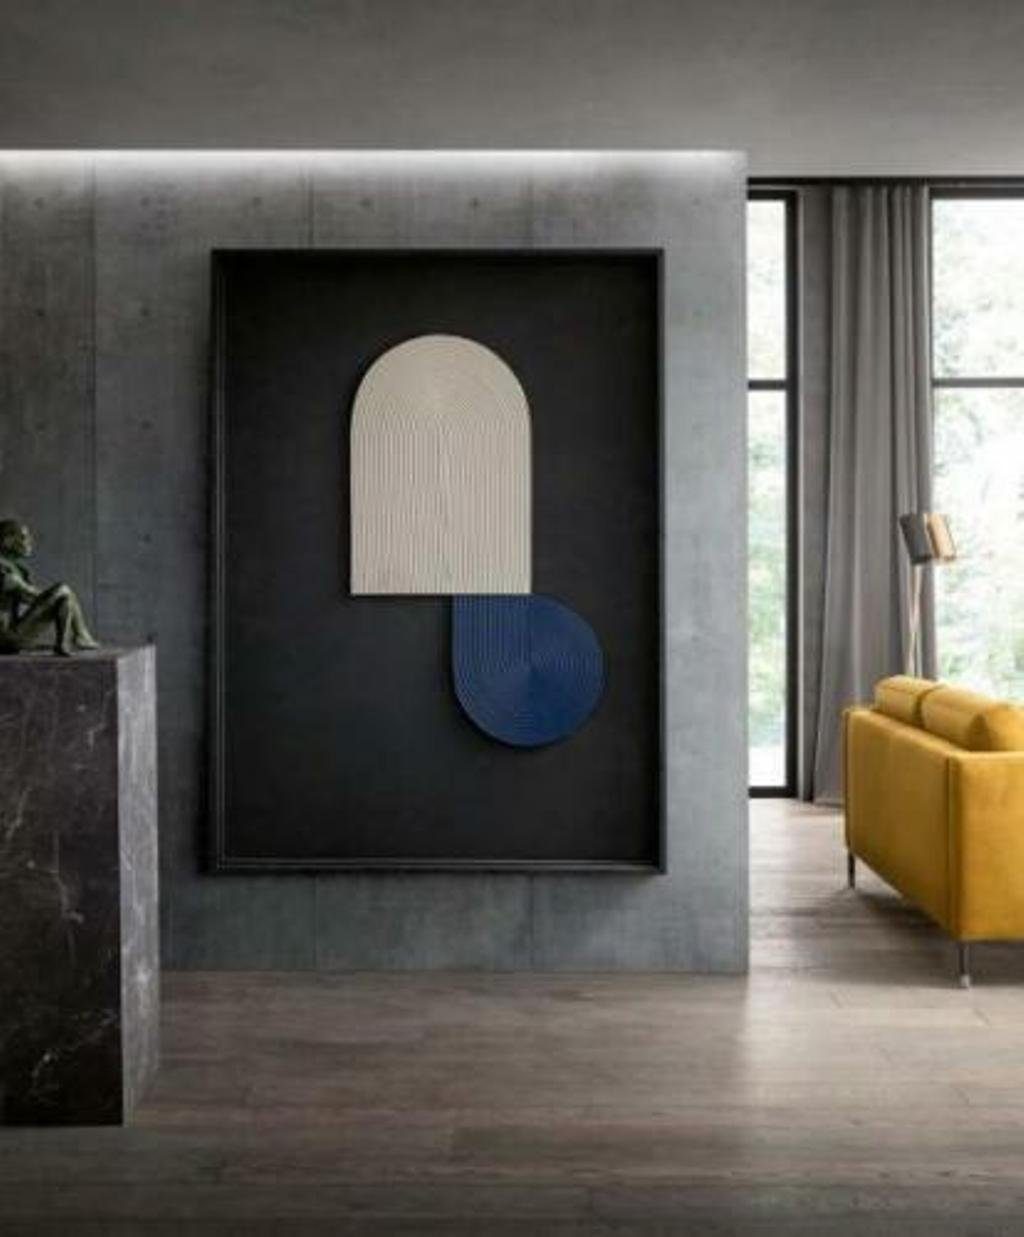 JVmoebel Polster 3tlg. 3+3 Garnitur Sitzer Wohnzimmer-Set, Sitz Garnituren Designer + Sofa Couch Hocker